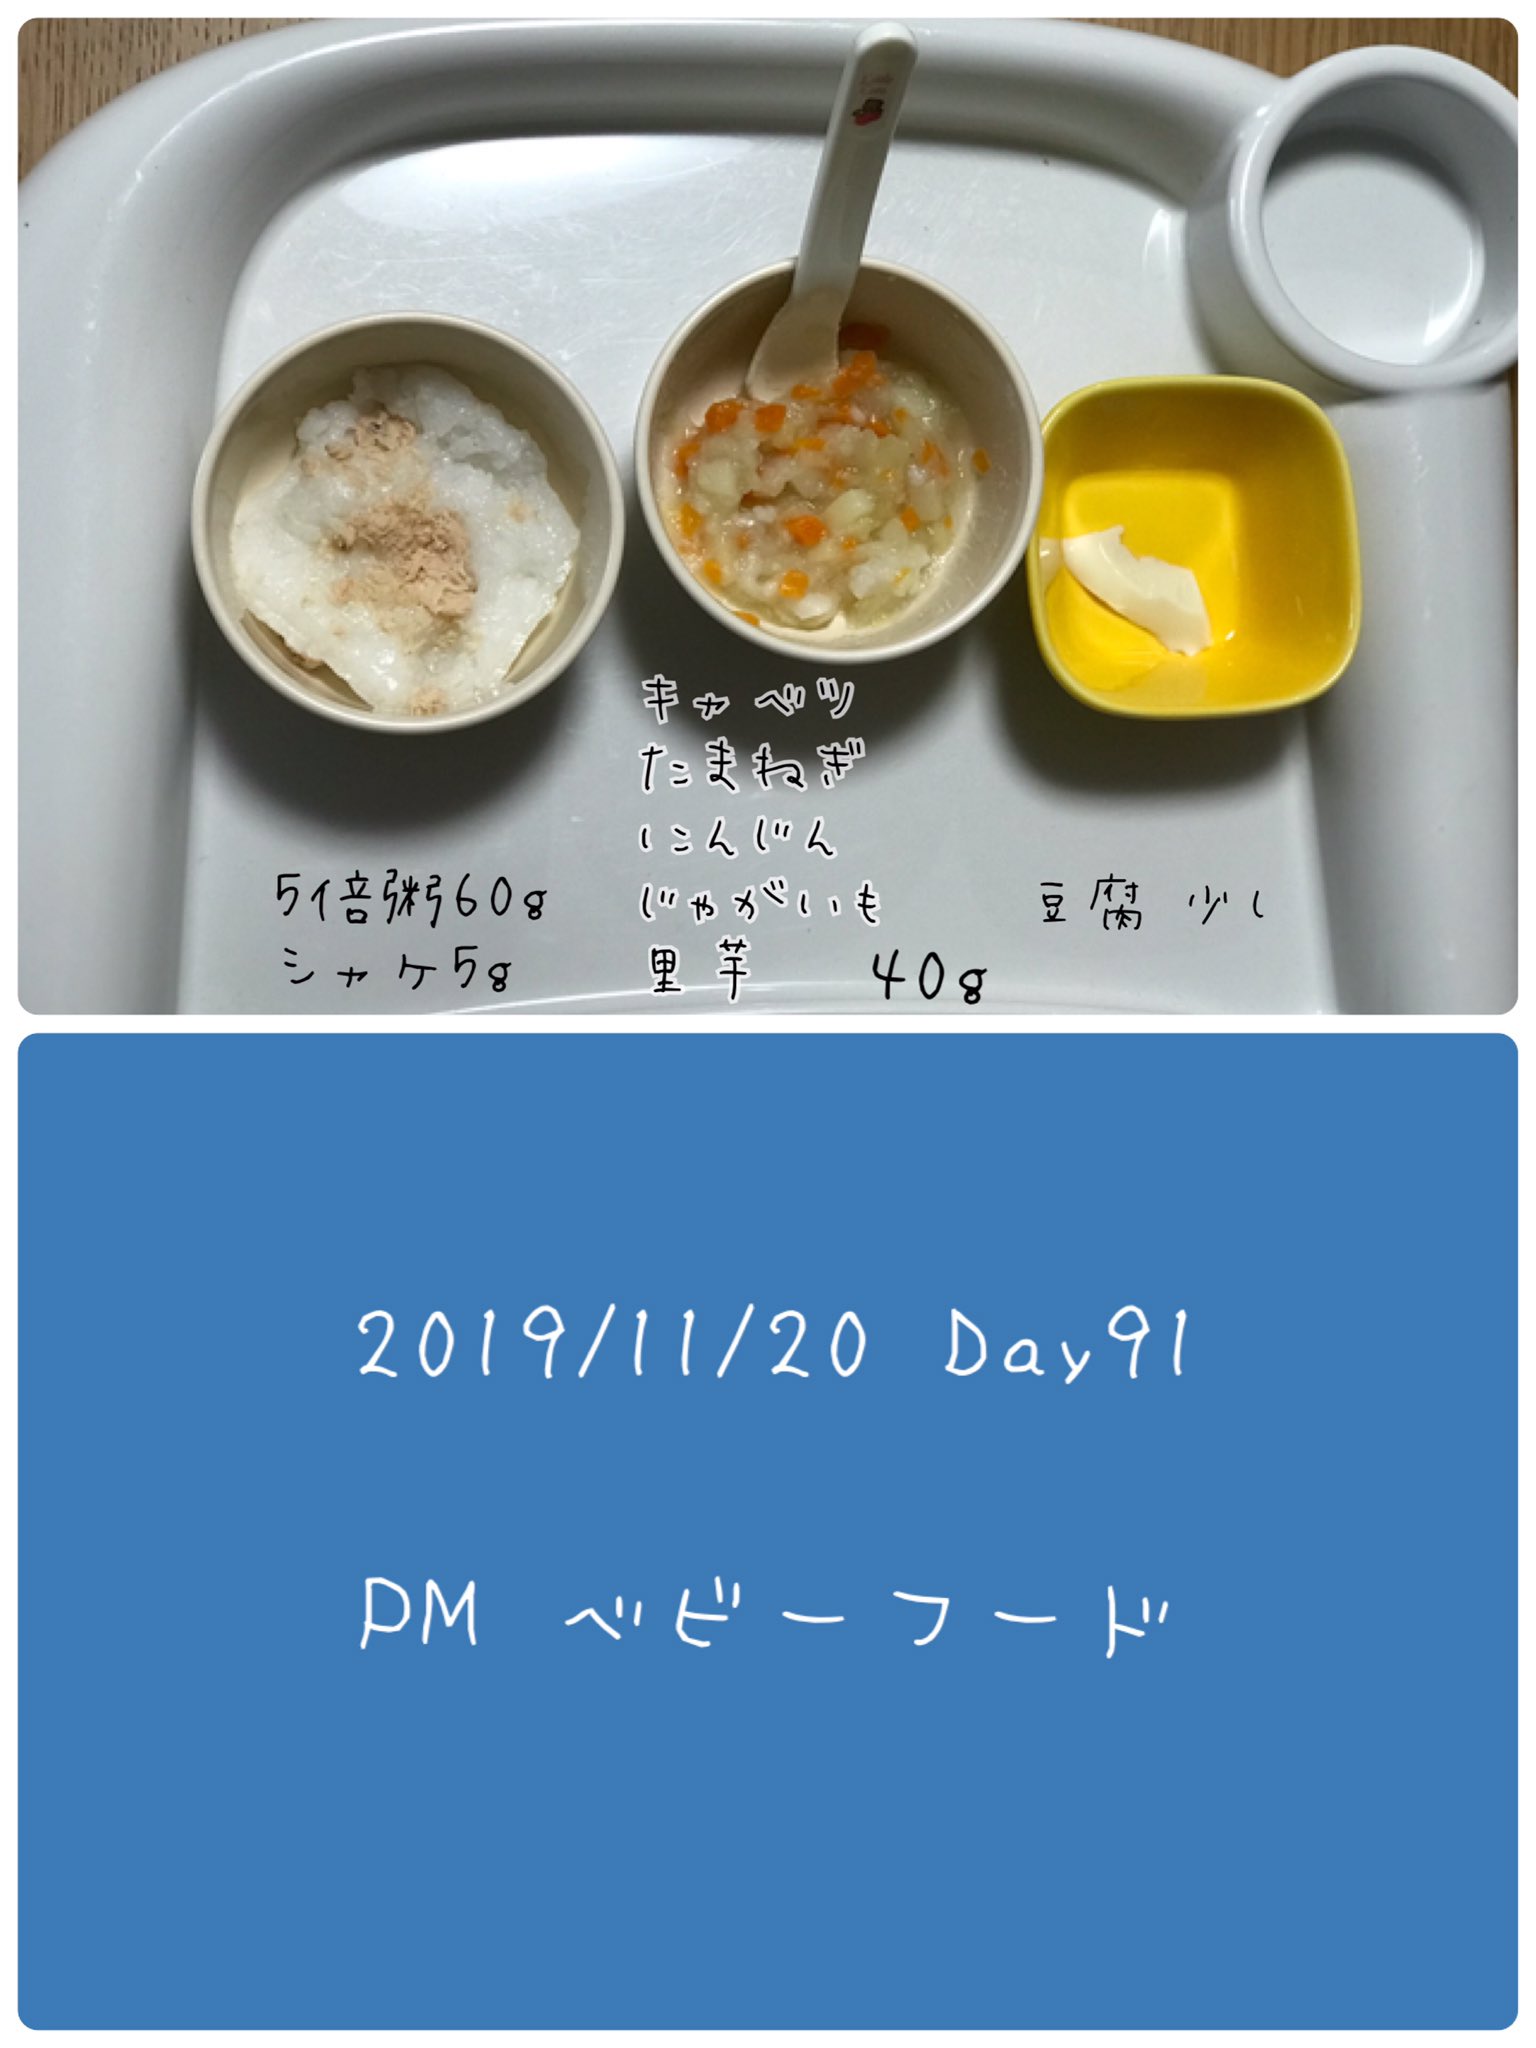 Matsukie Auf Twitter 離乳食 Day91 ずっと避けてきた豆腐 最近体調も落ち着いてきてるから再開 とりあえず写真の量 よりもっと少なめの量をあげてみた 今回は吐かなかったから 少しずつ量増やしていけたらいいな シャケも初挑戦 離乳食 19mar Baby 生後